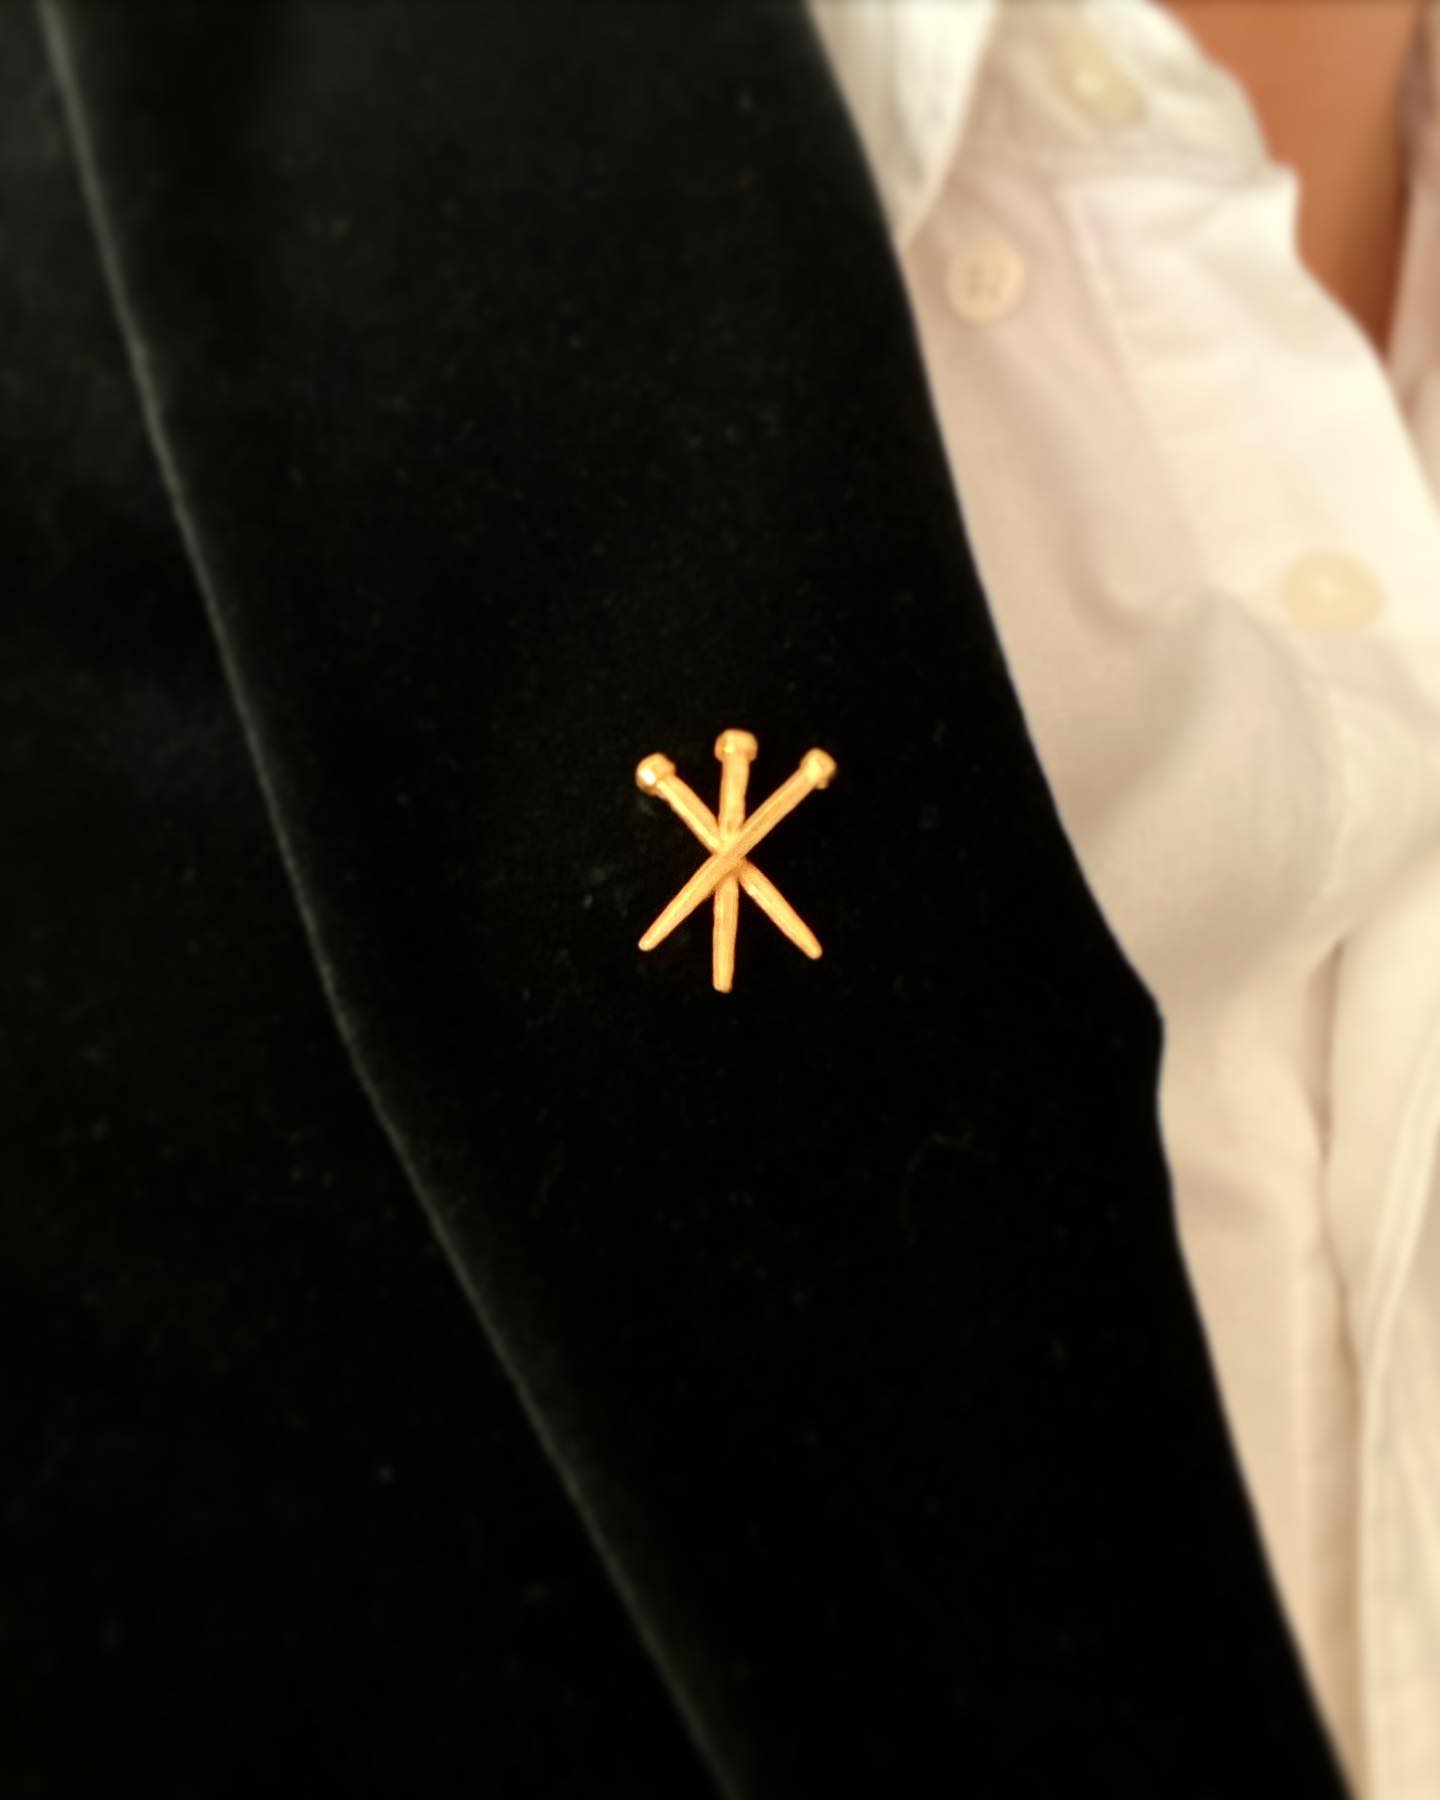 Insignias clavos de Cristo en metal chapado en oro! 😍 ya disponibles en la web por solo 25€!! https://alejandrocarrero.com/insignias/107-insignia-clavos-de-cristo-.html

———
#alejandrocarrerojoyas #joyasdeautor #joyasconencato #insignias #pines #traje #chaqueta #americana #cofrade #semanasanta